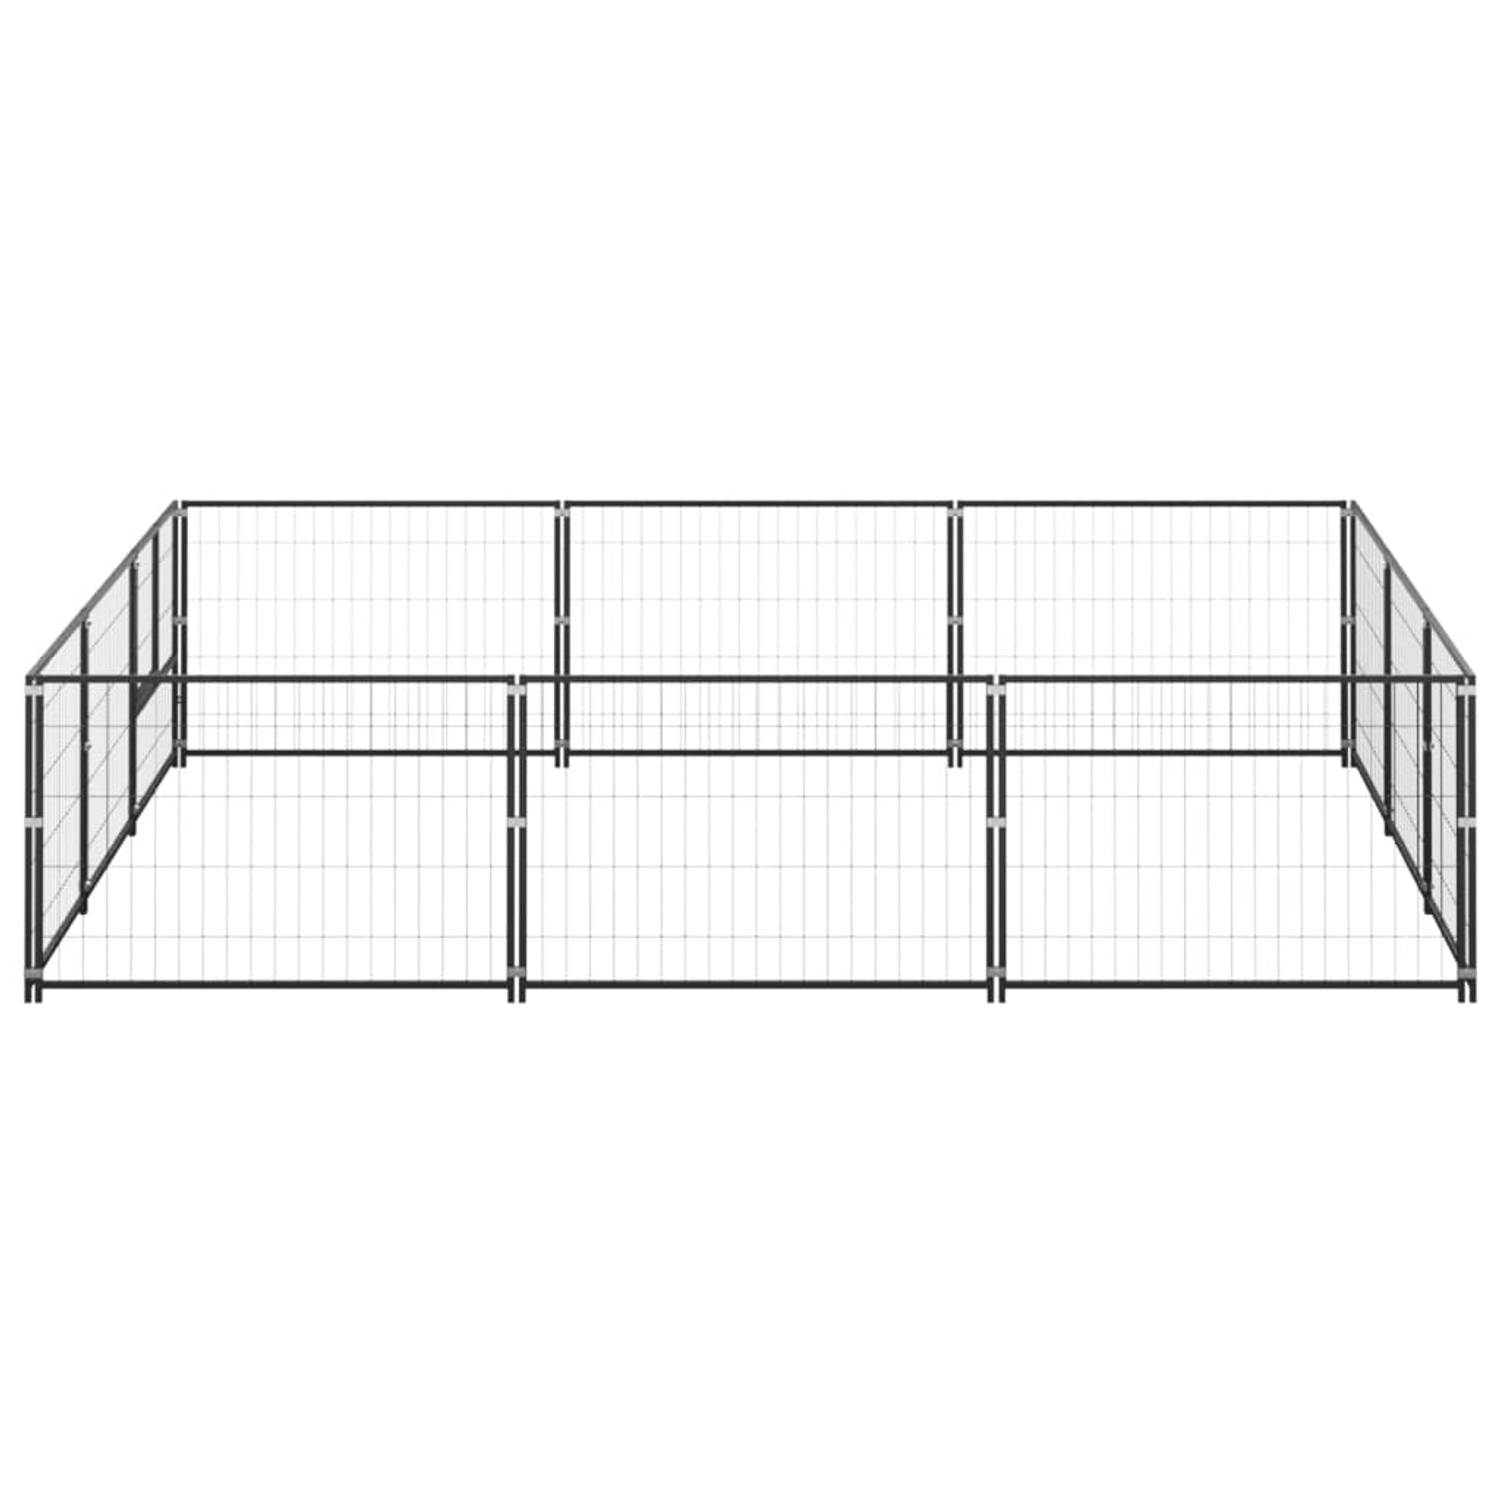 The Living Store Hondenkennel - Grote buitenren 300x300x70 cm - Zwart staal